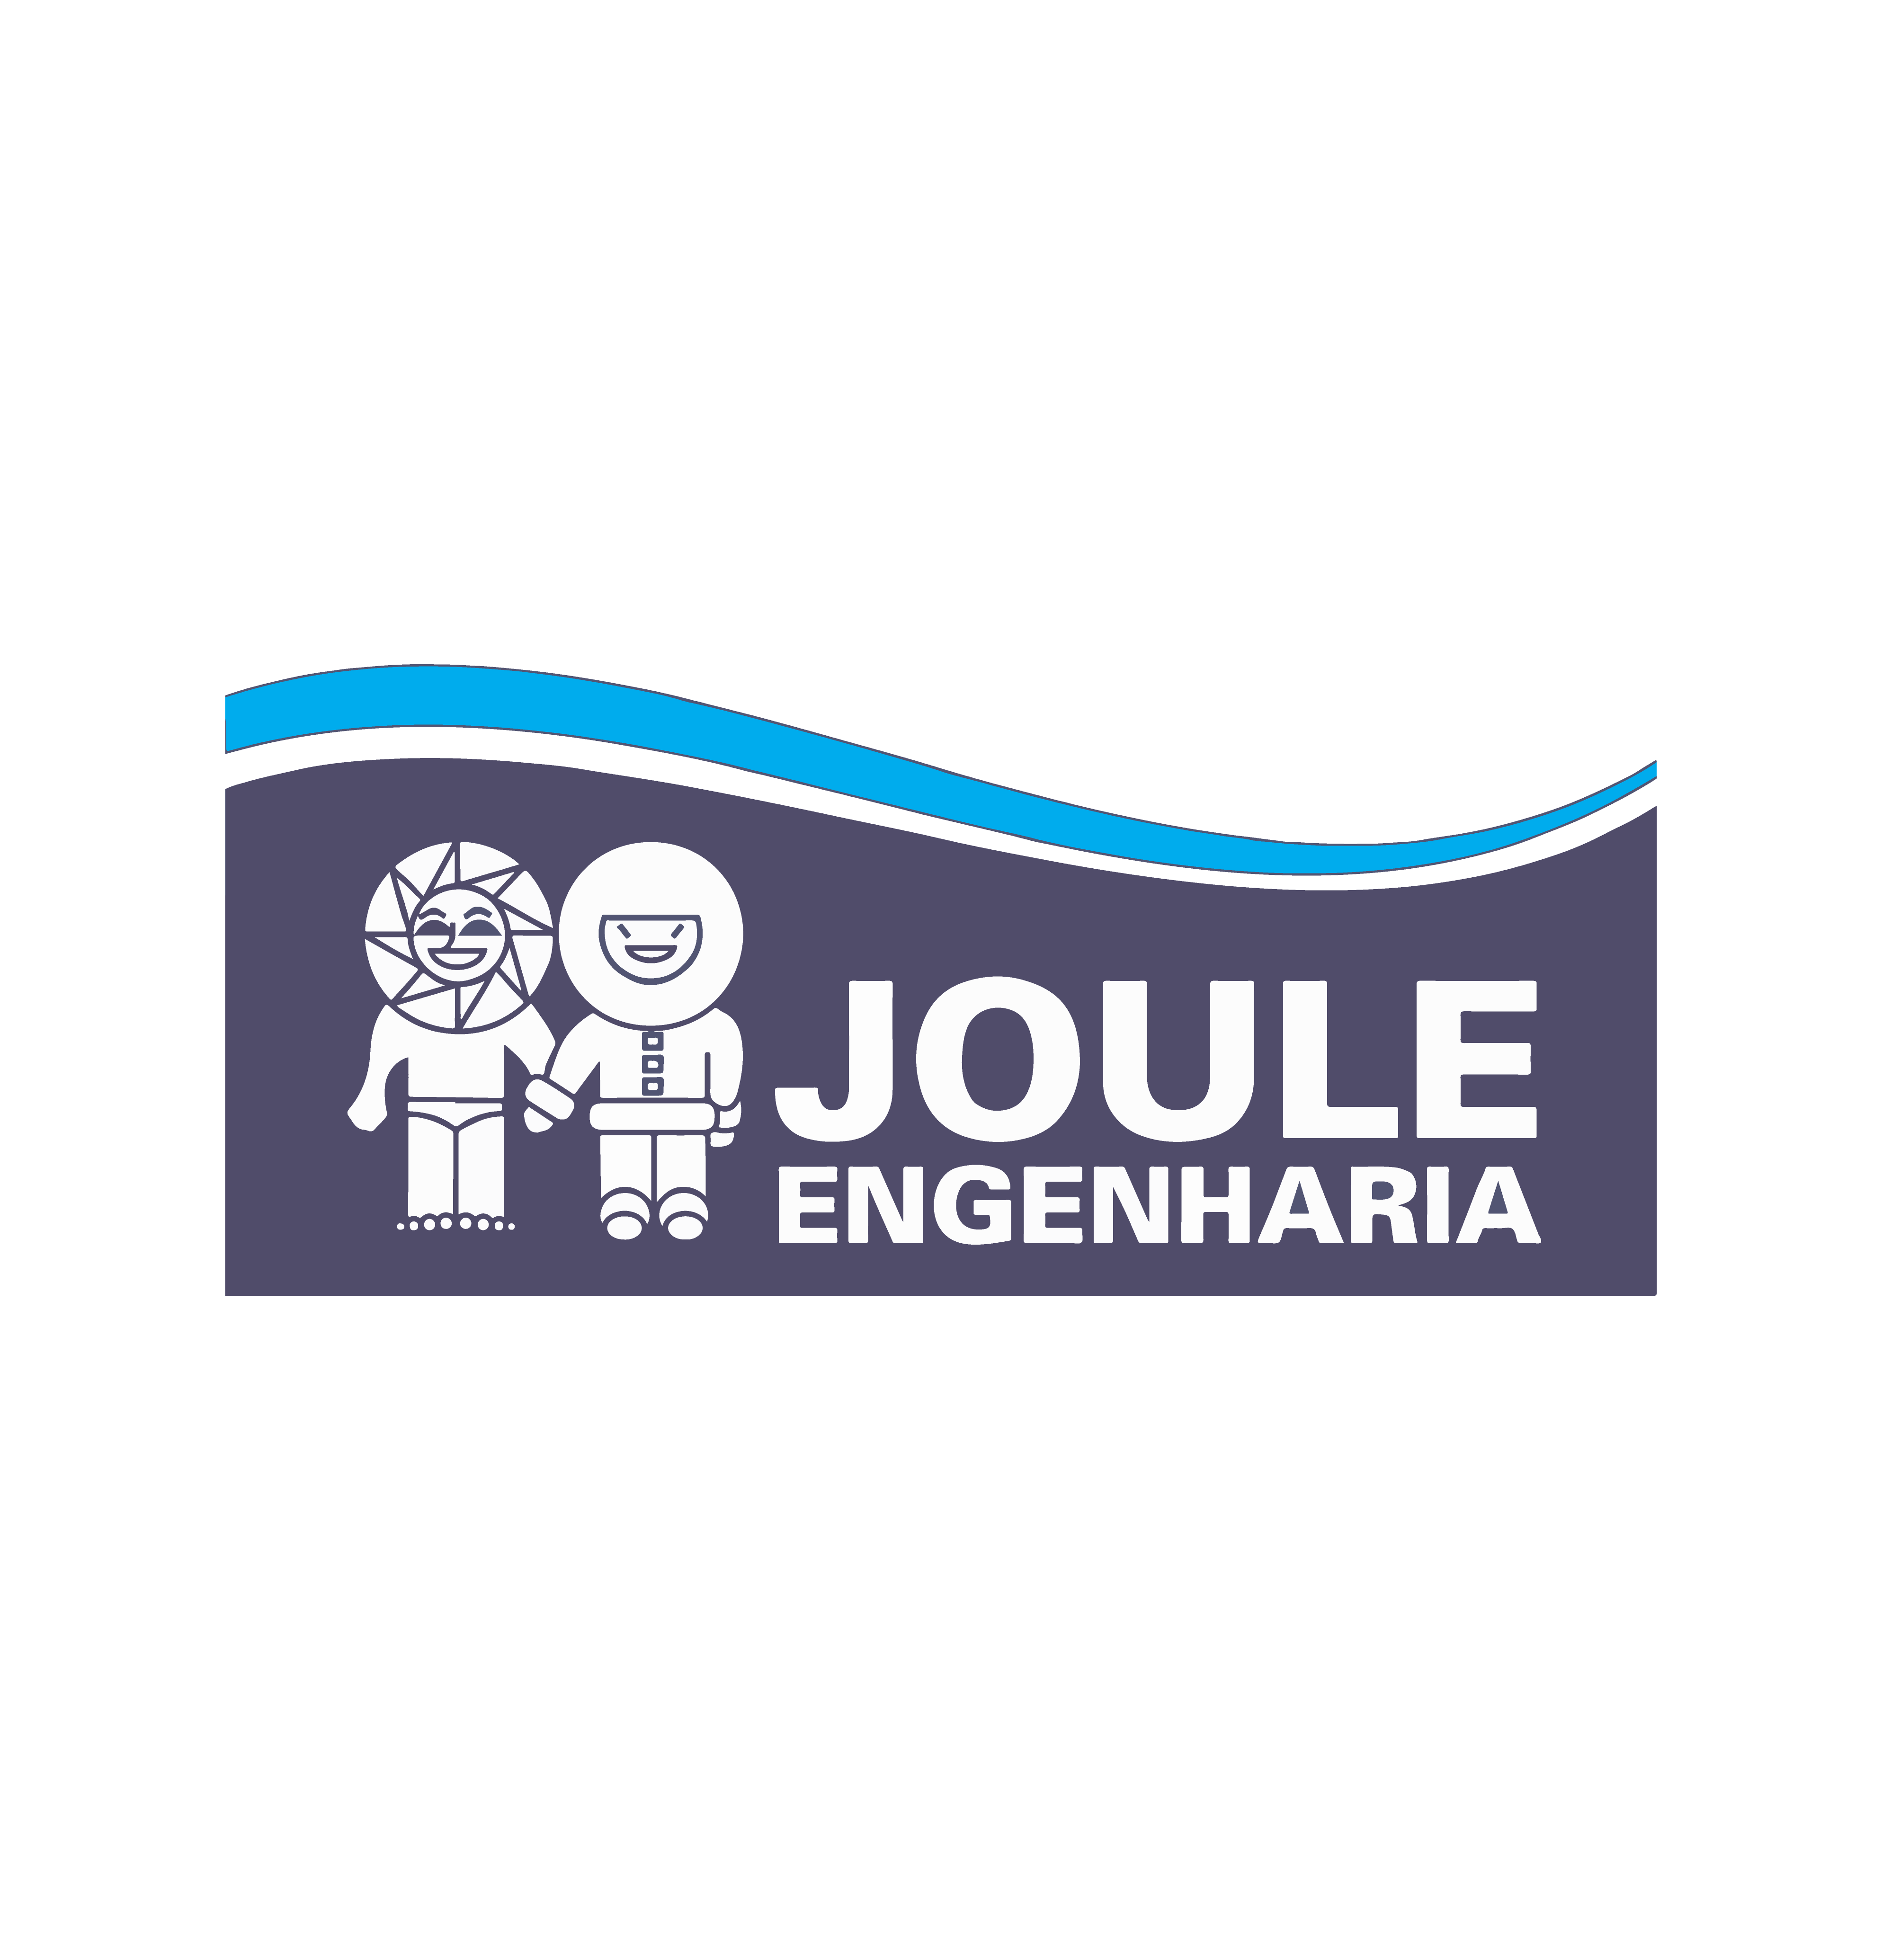 JOULE ENGENHARIA